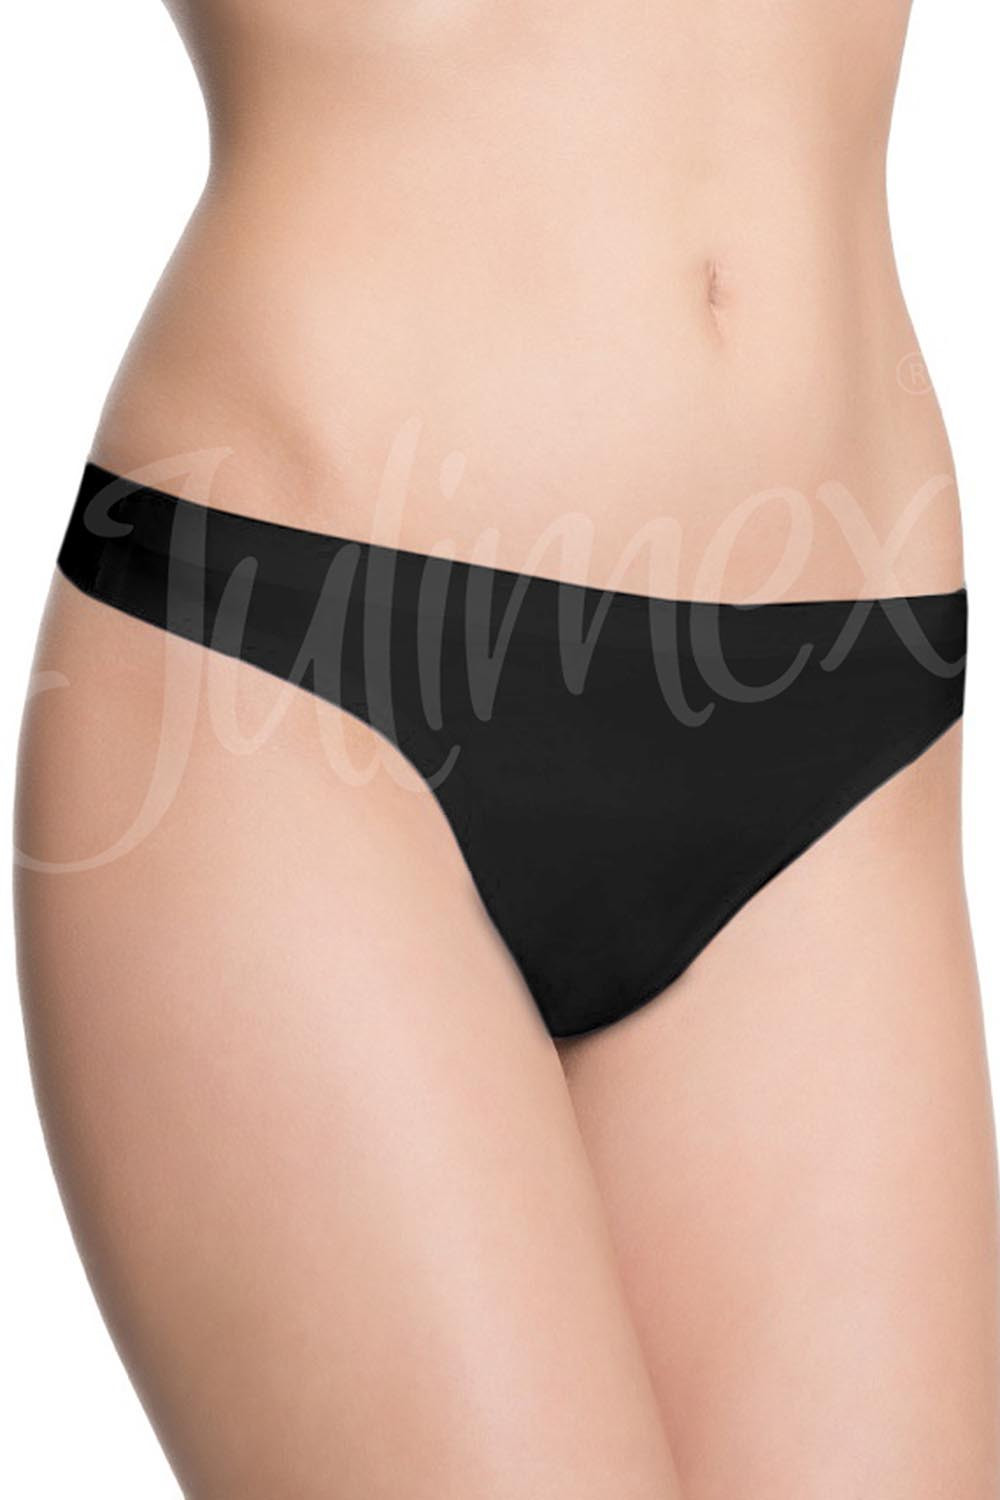 Julimex String panty kolor:czarny XL